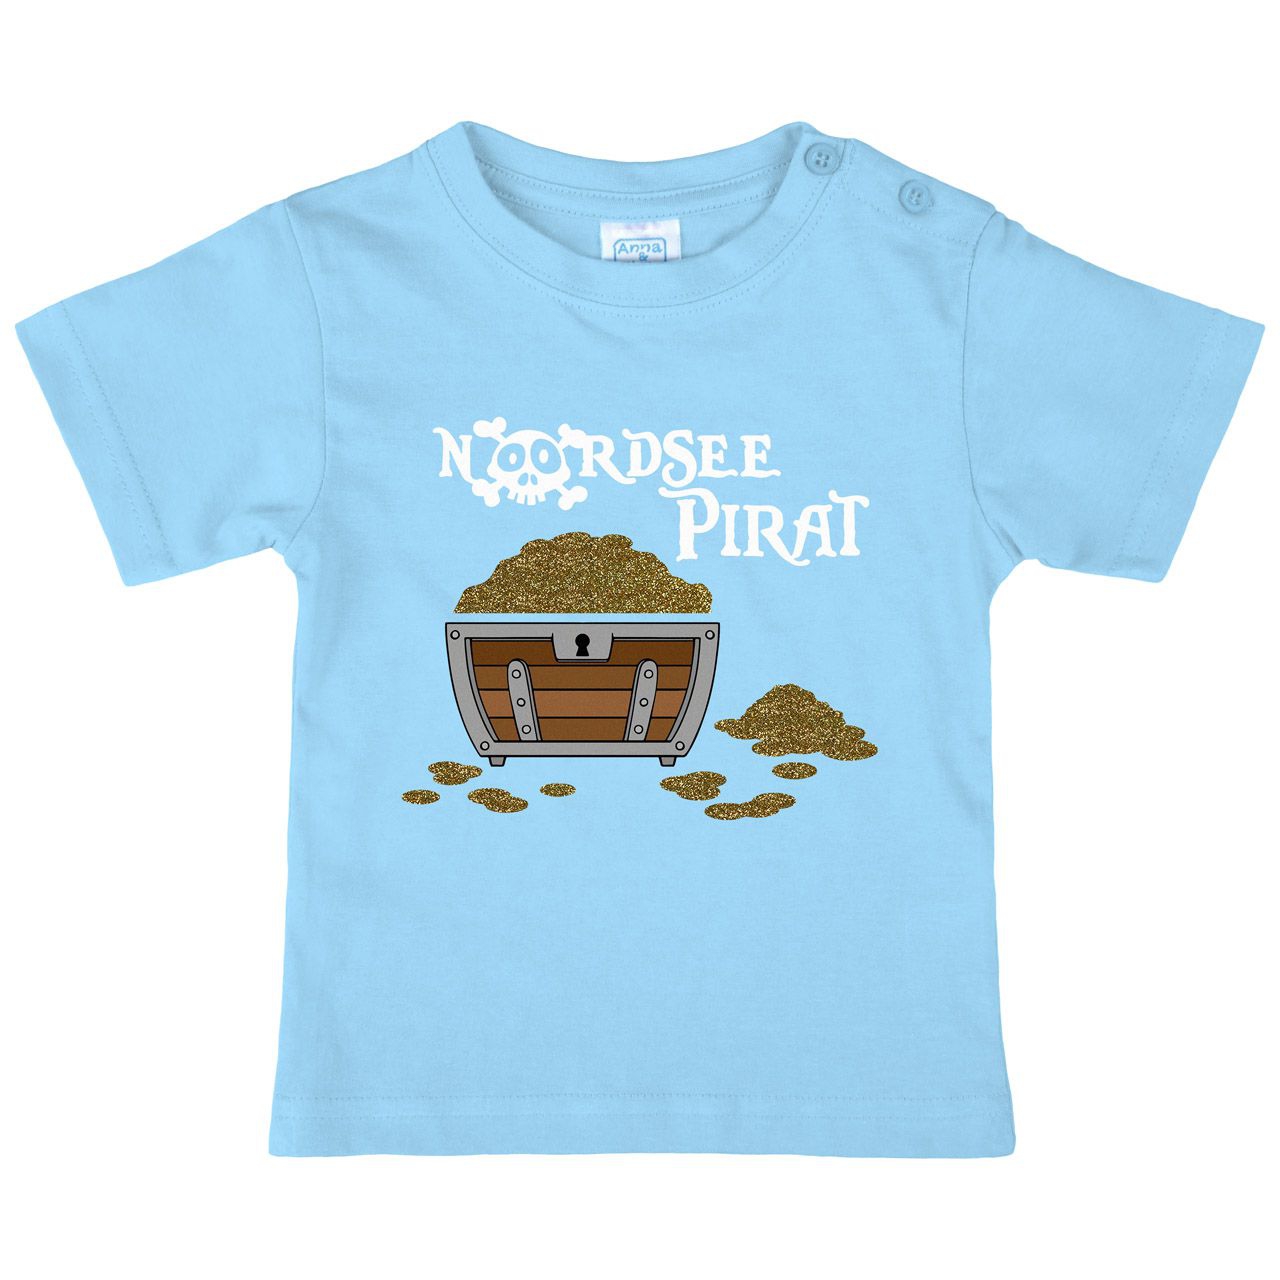 Nordsee Pirat Truhe Gold Glitzer Kinder T-Shirt hellblau 110 / 116